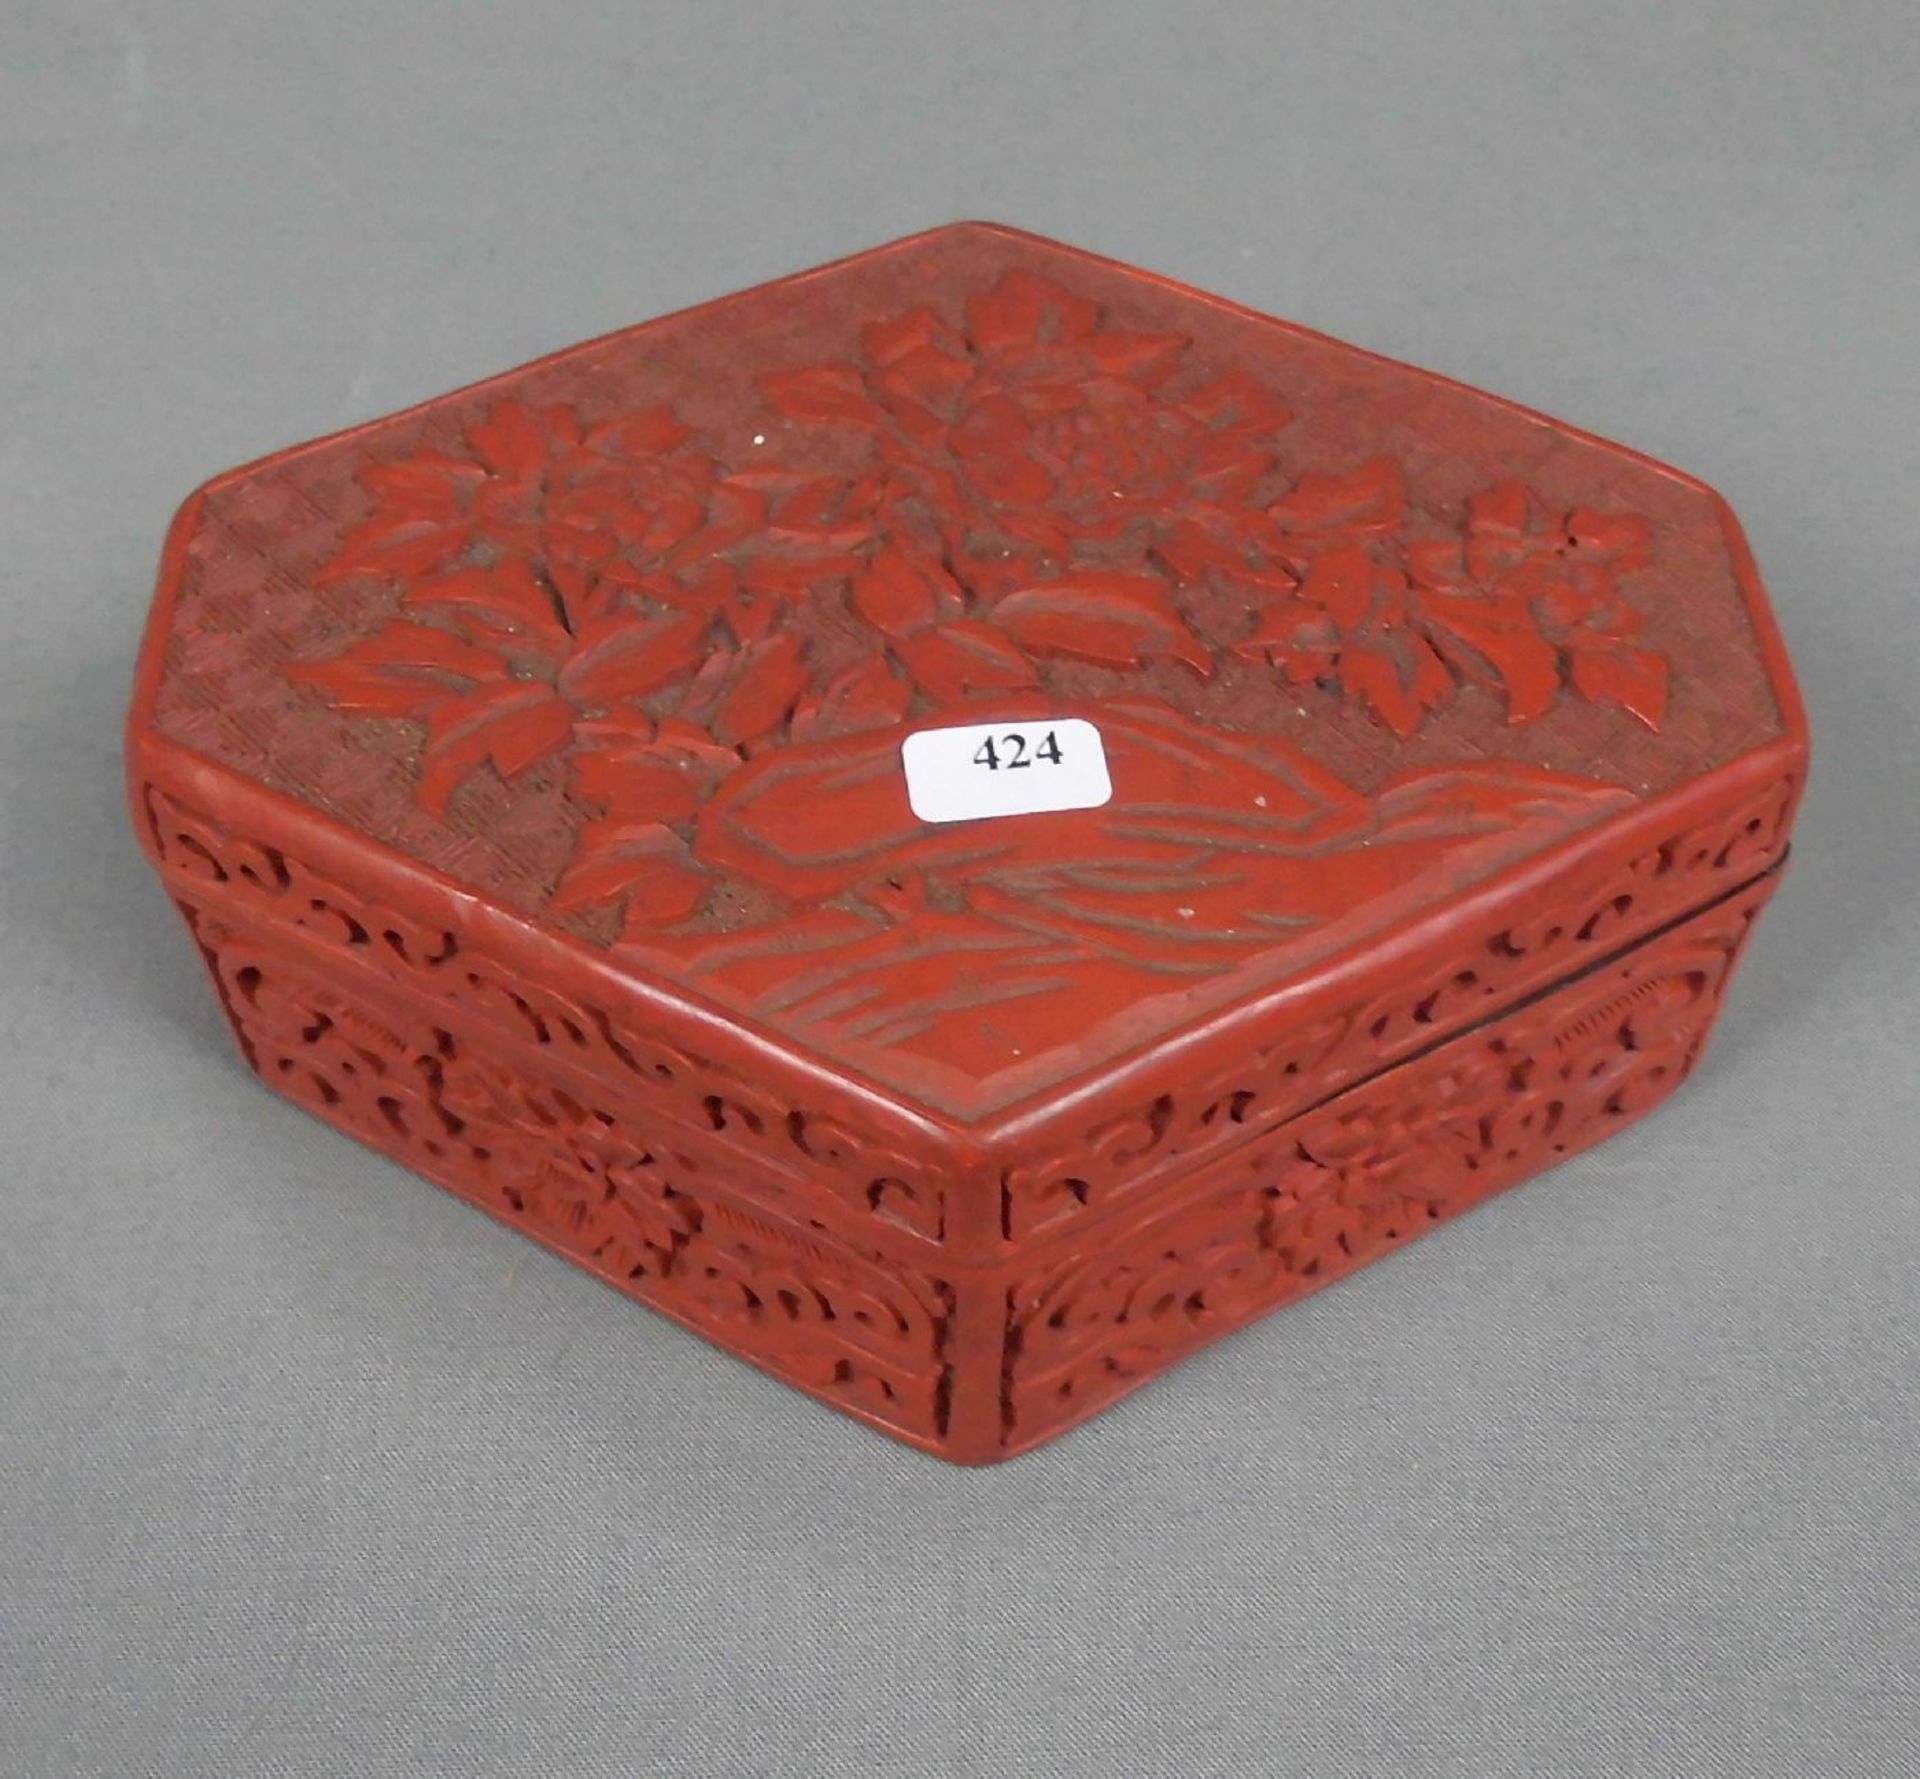 DECKELDOSE / SCHATULLE in der Art einer Rotlackdose / box, China, 2. Hälfte 20, Jh.; Reliefdekor mit